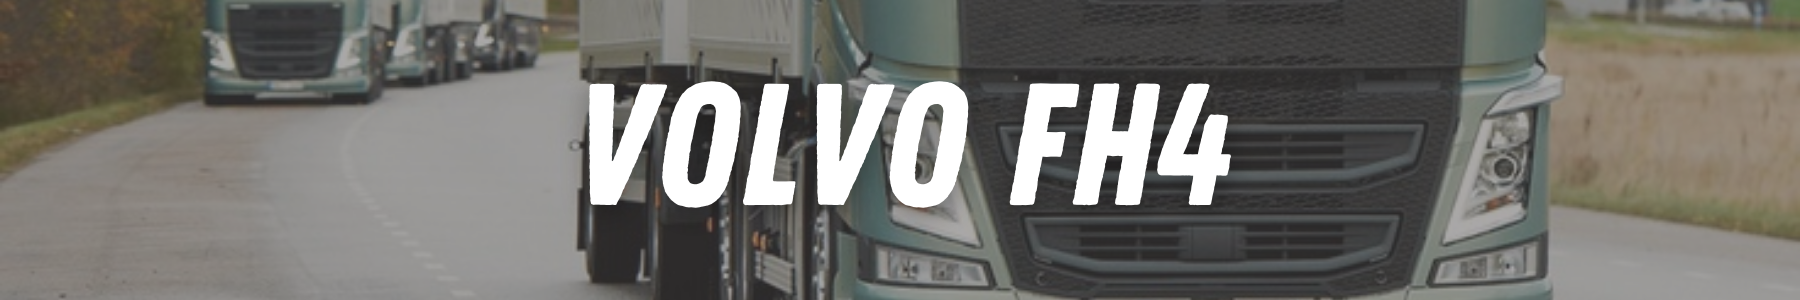 22H22 - Accessoires tuning pour votre poids lourd Volvo FH4